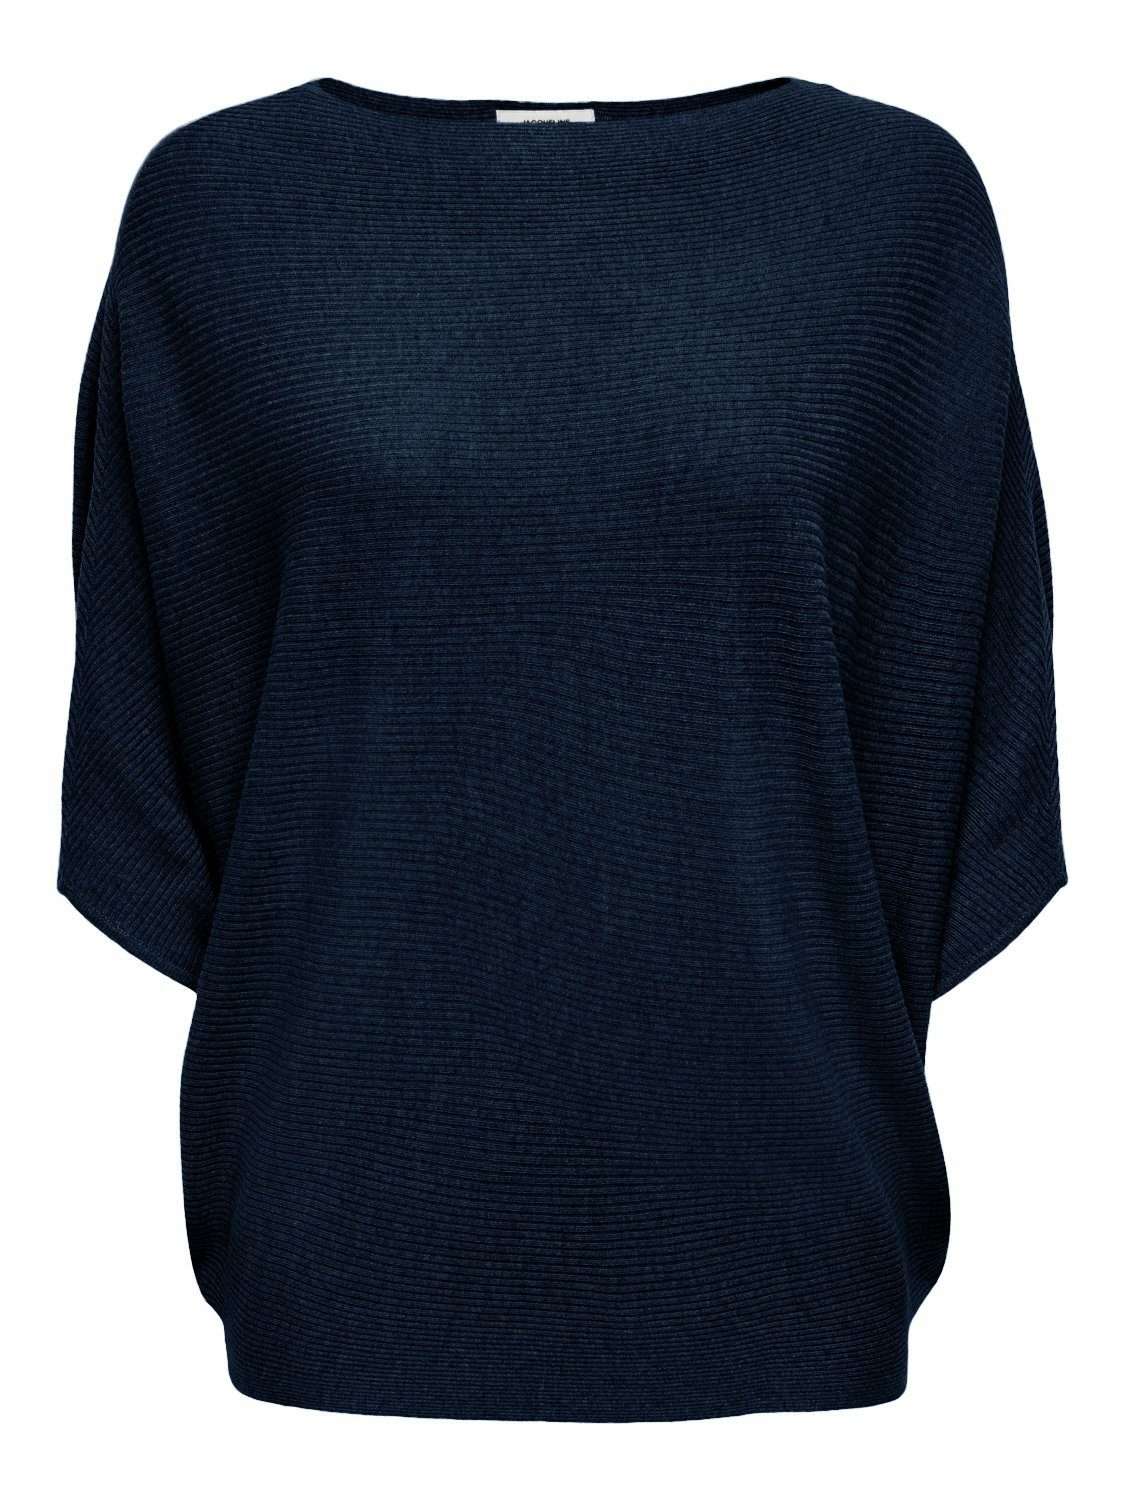 Вязаный свитер, пуловер, толстовка тонкой вязки Свитер JDYNEW BEHAVE BATSLEEVE (1 шт.) 3053 темно-синего цвета